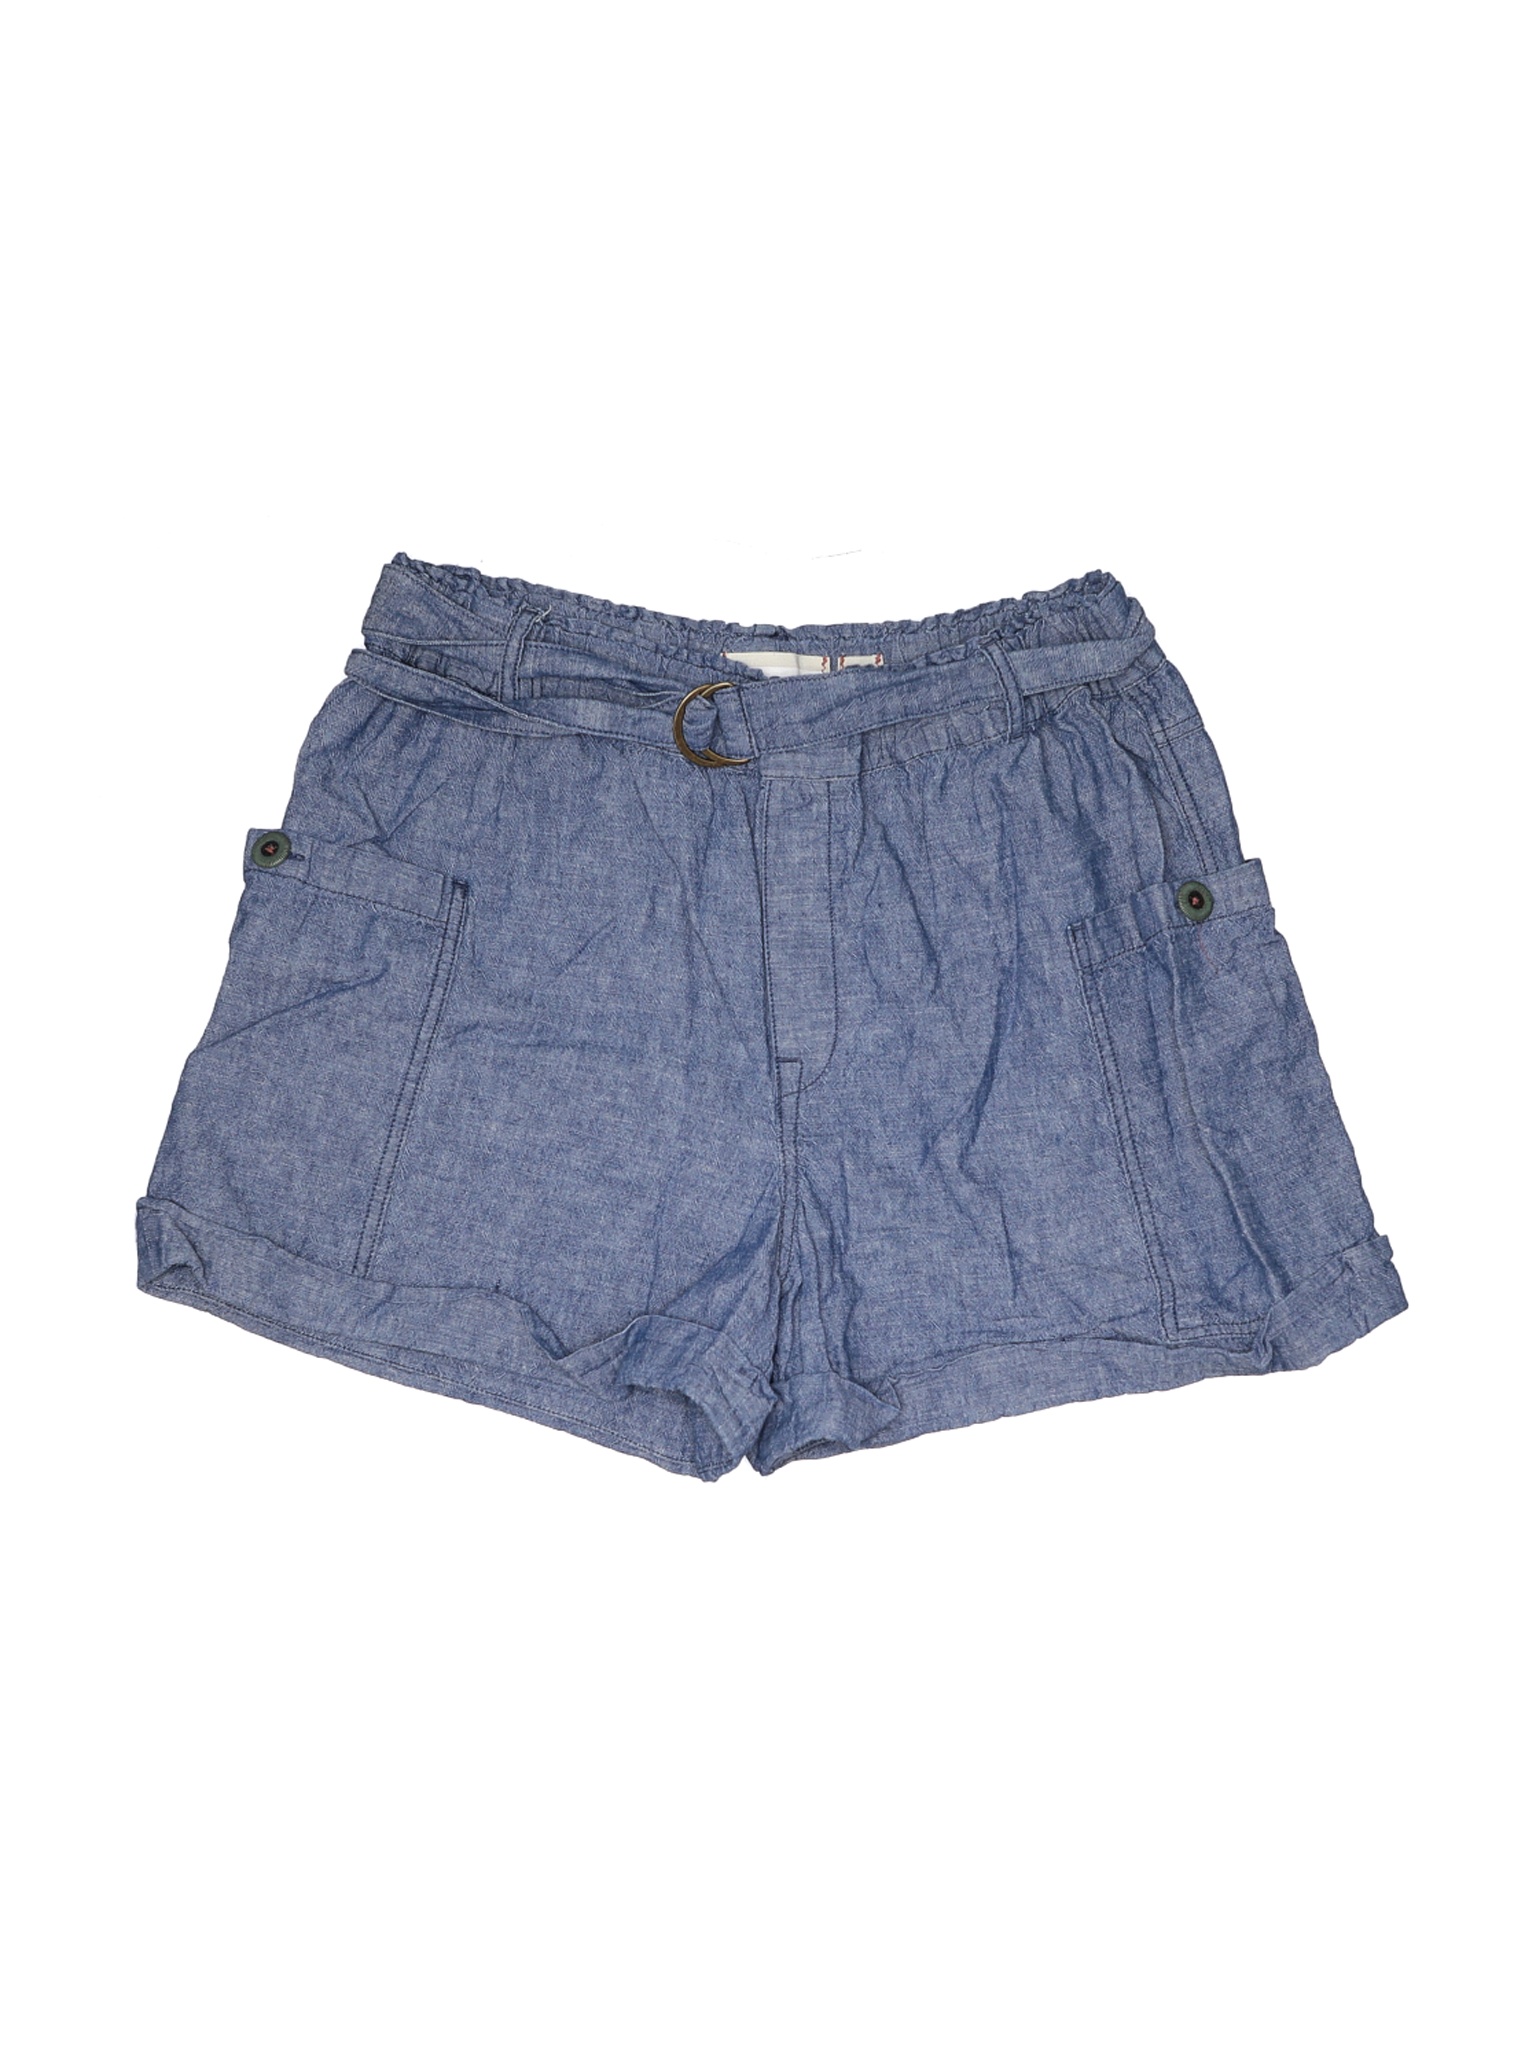 Hei Hei Women Blue Shorts L | eBay